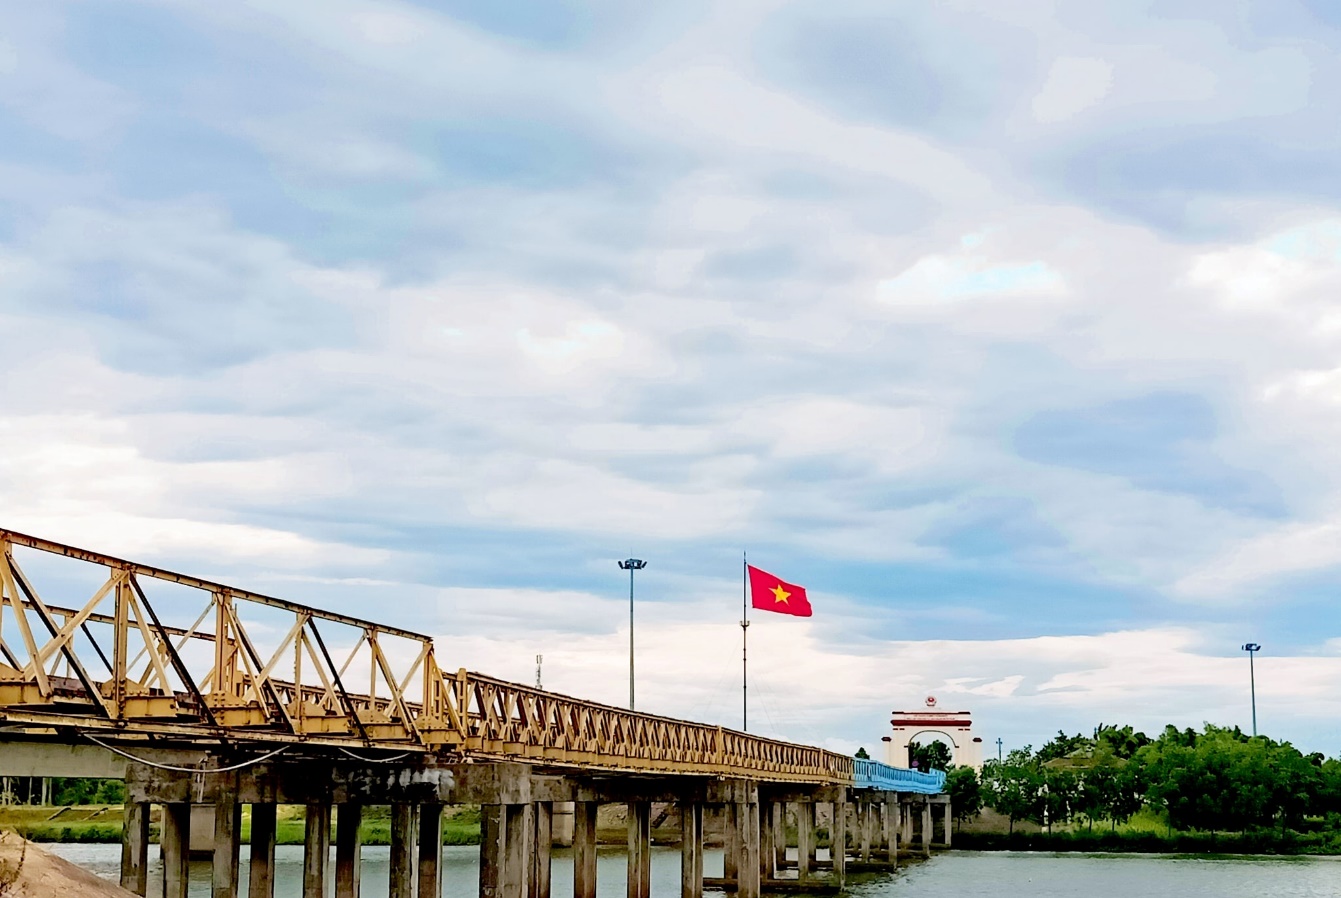 Dừng chân bên cây cầu lịch sử ở Quảng Trị - 2